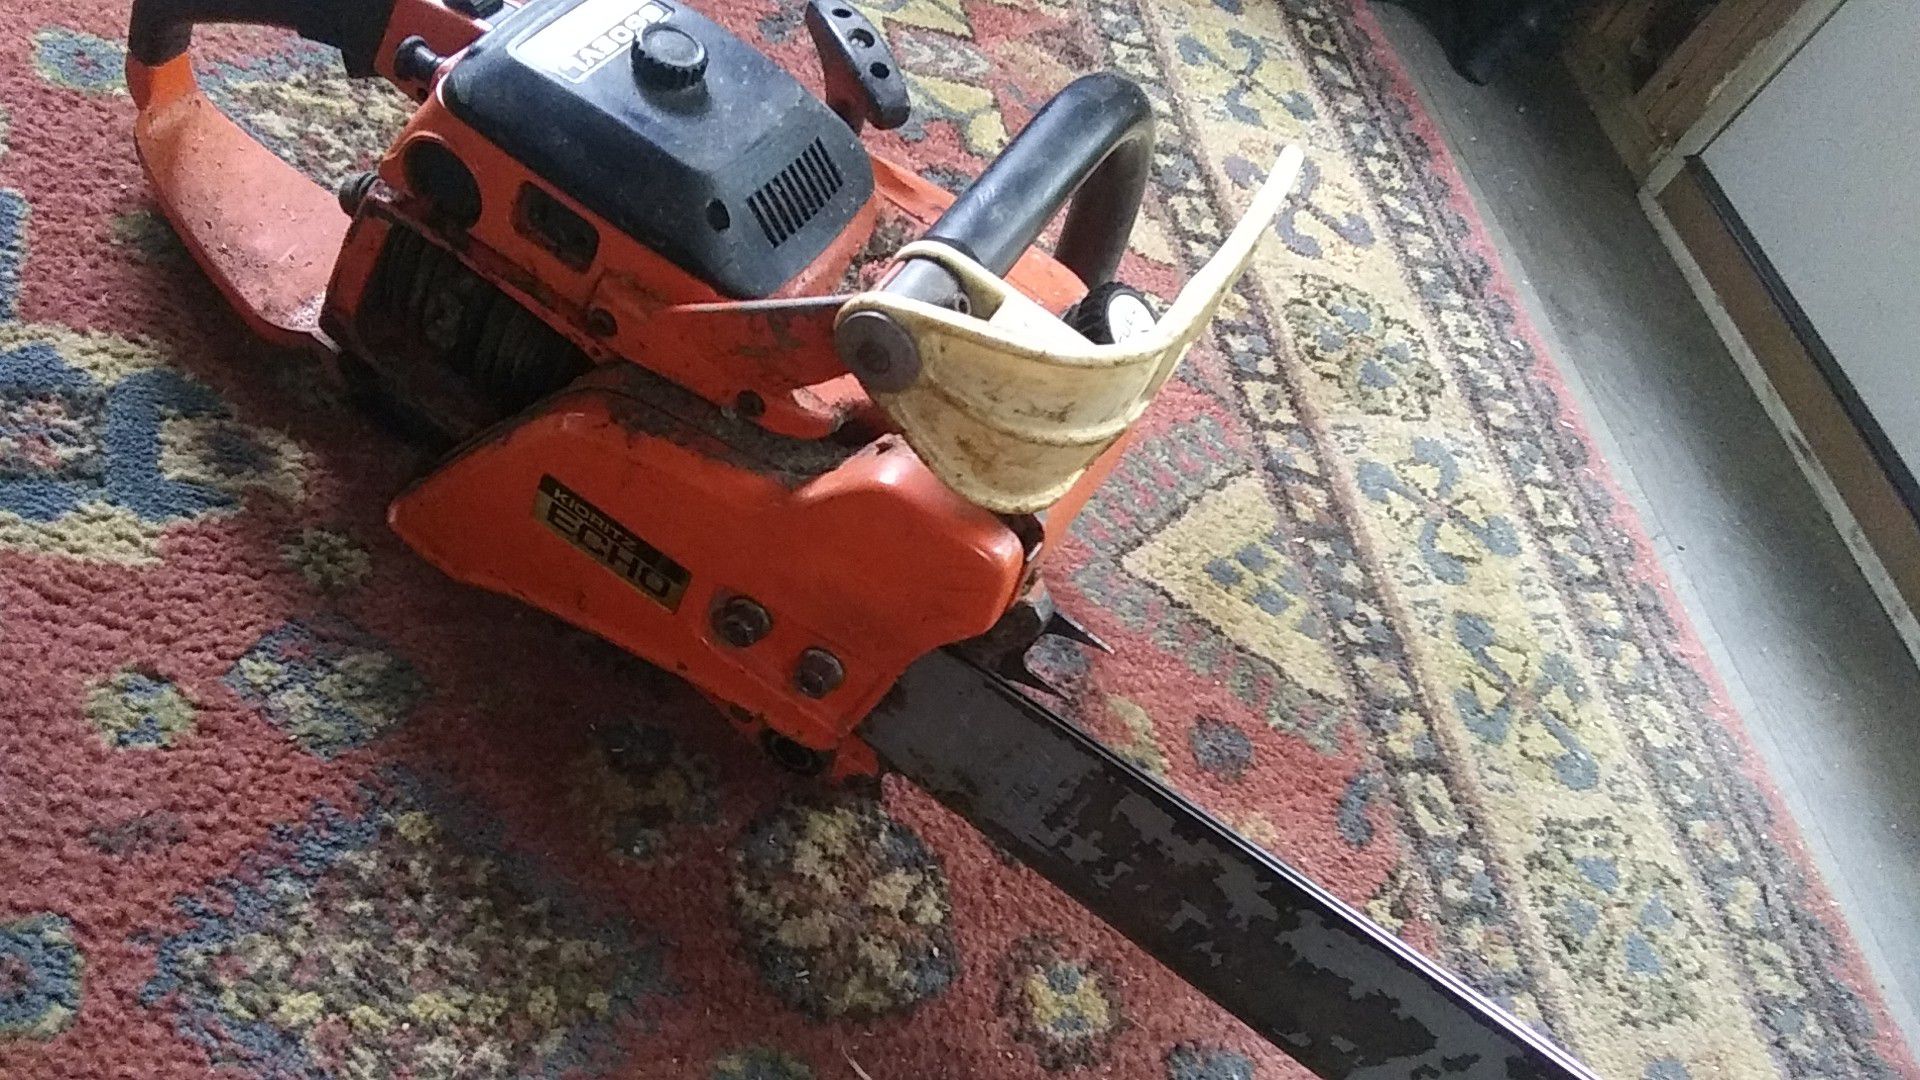 Echo chainsaw